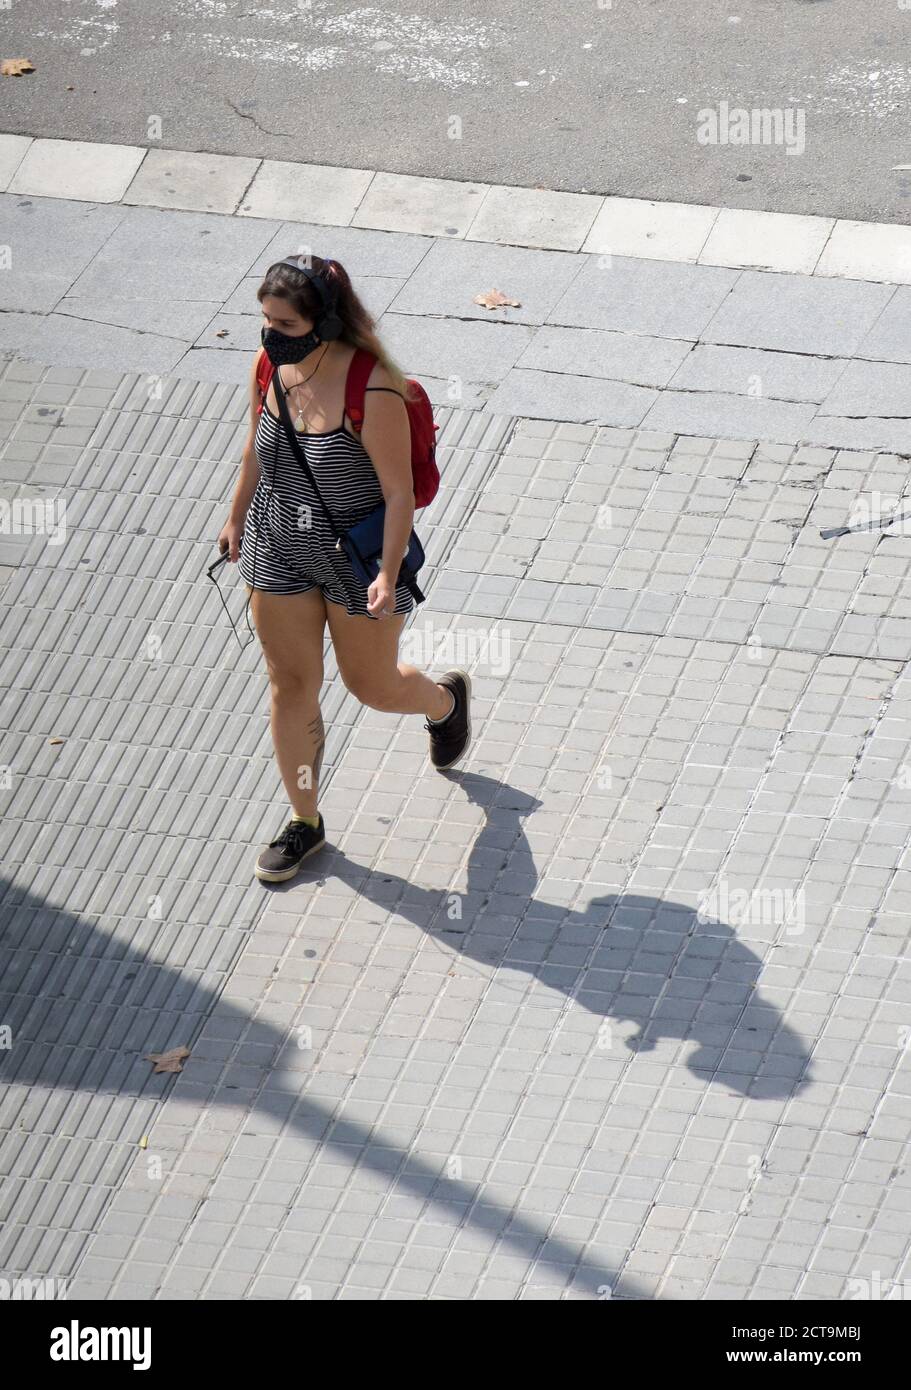 Une jeune femme avec un masque de protection marchant dans une rue pendant qu'elle écoute de la musique avec son mobile. Banque D'Images